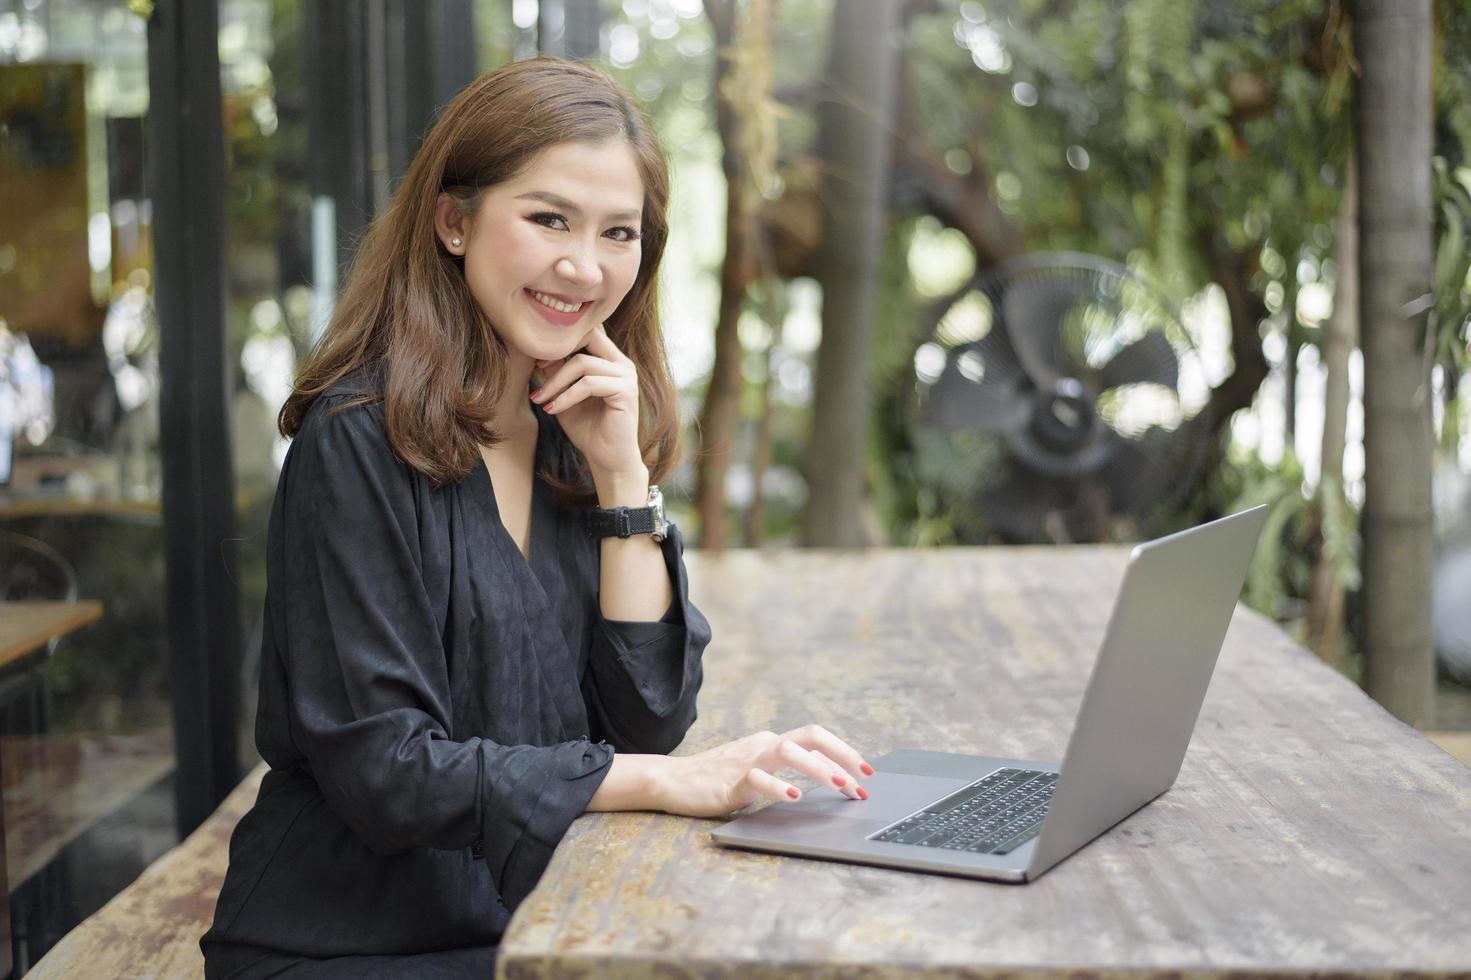 une femme asiatique intelligente travaille avec un ordinateur portable photo